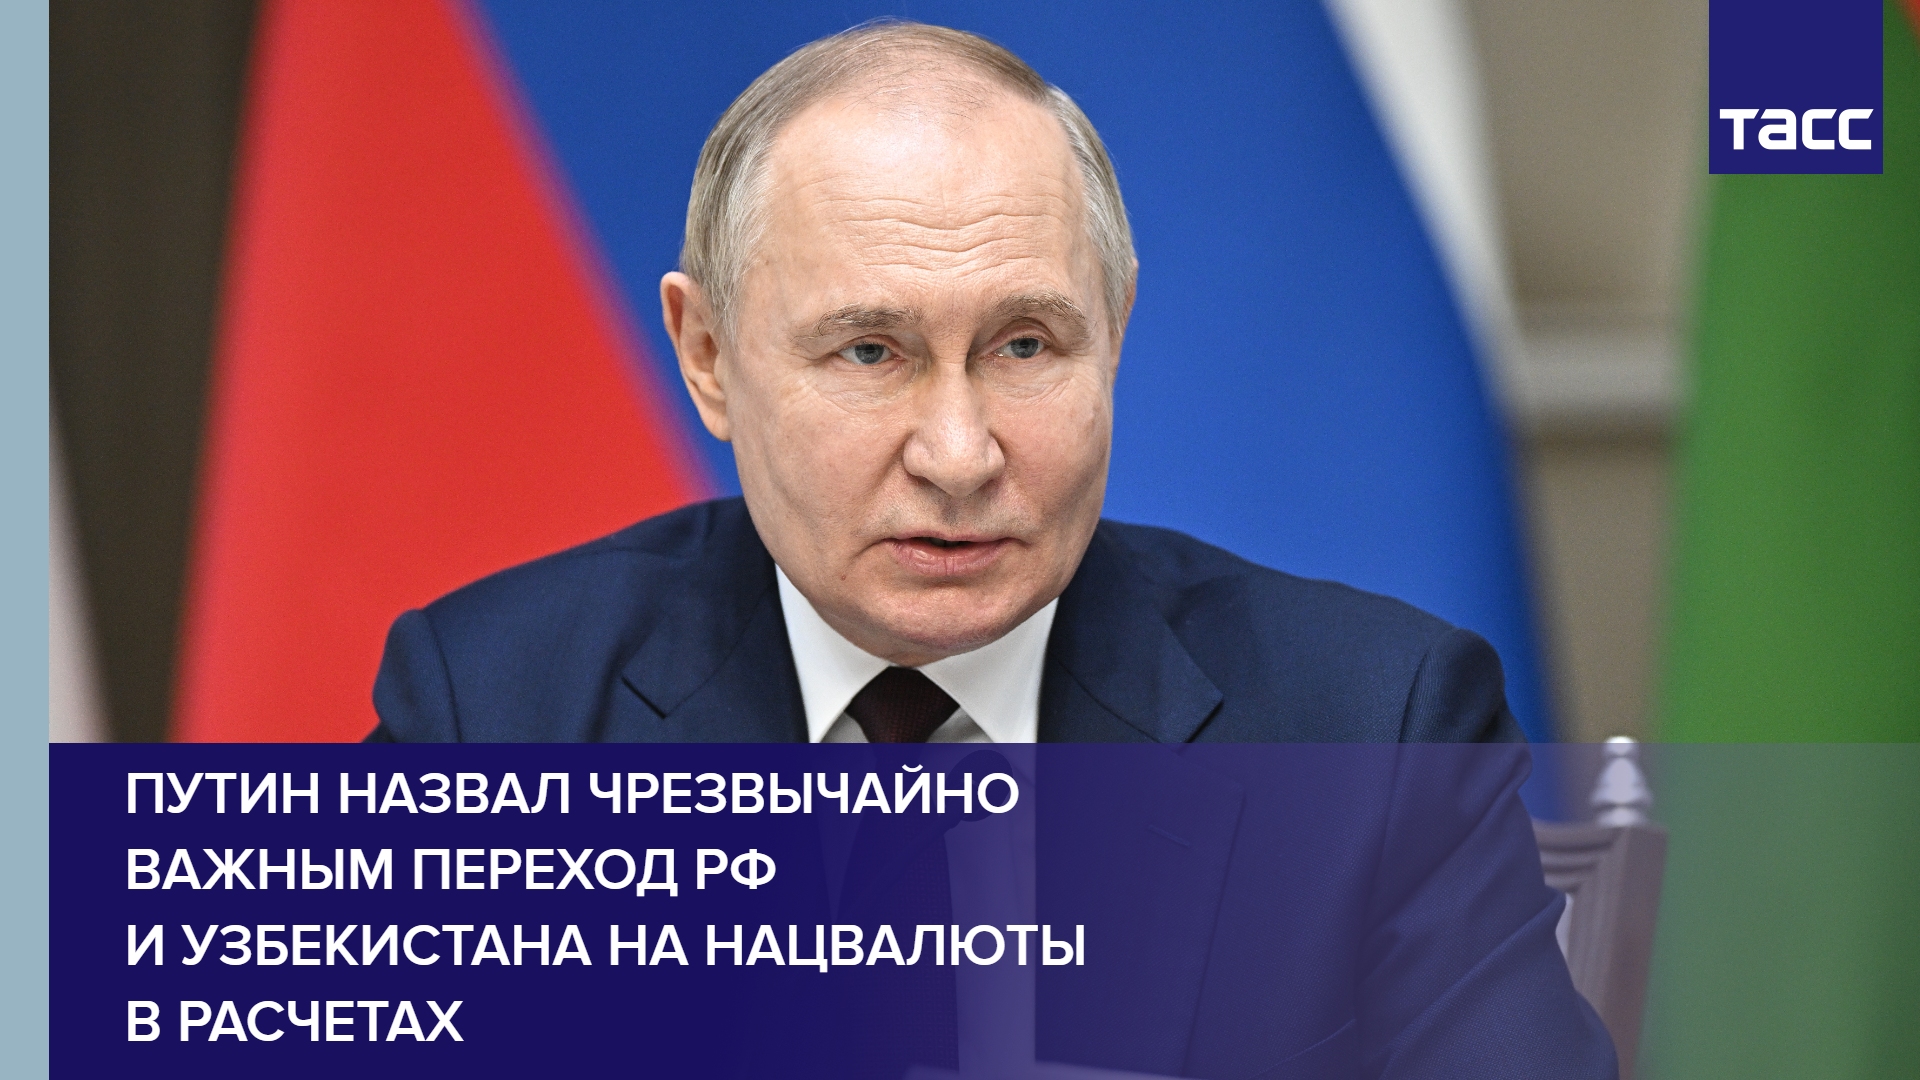 Путин назвал чрезвычайно важным переход РФ и Узбекистана на нацвалюты в расчетах